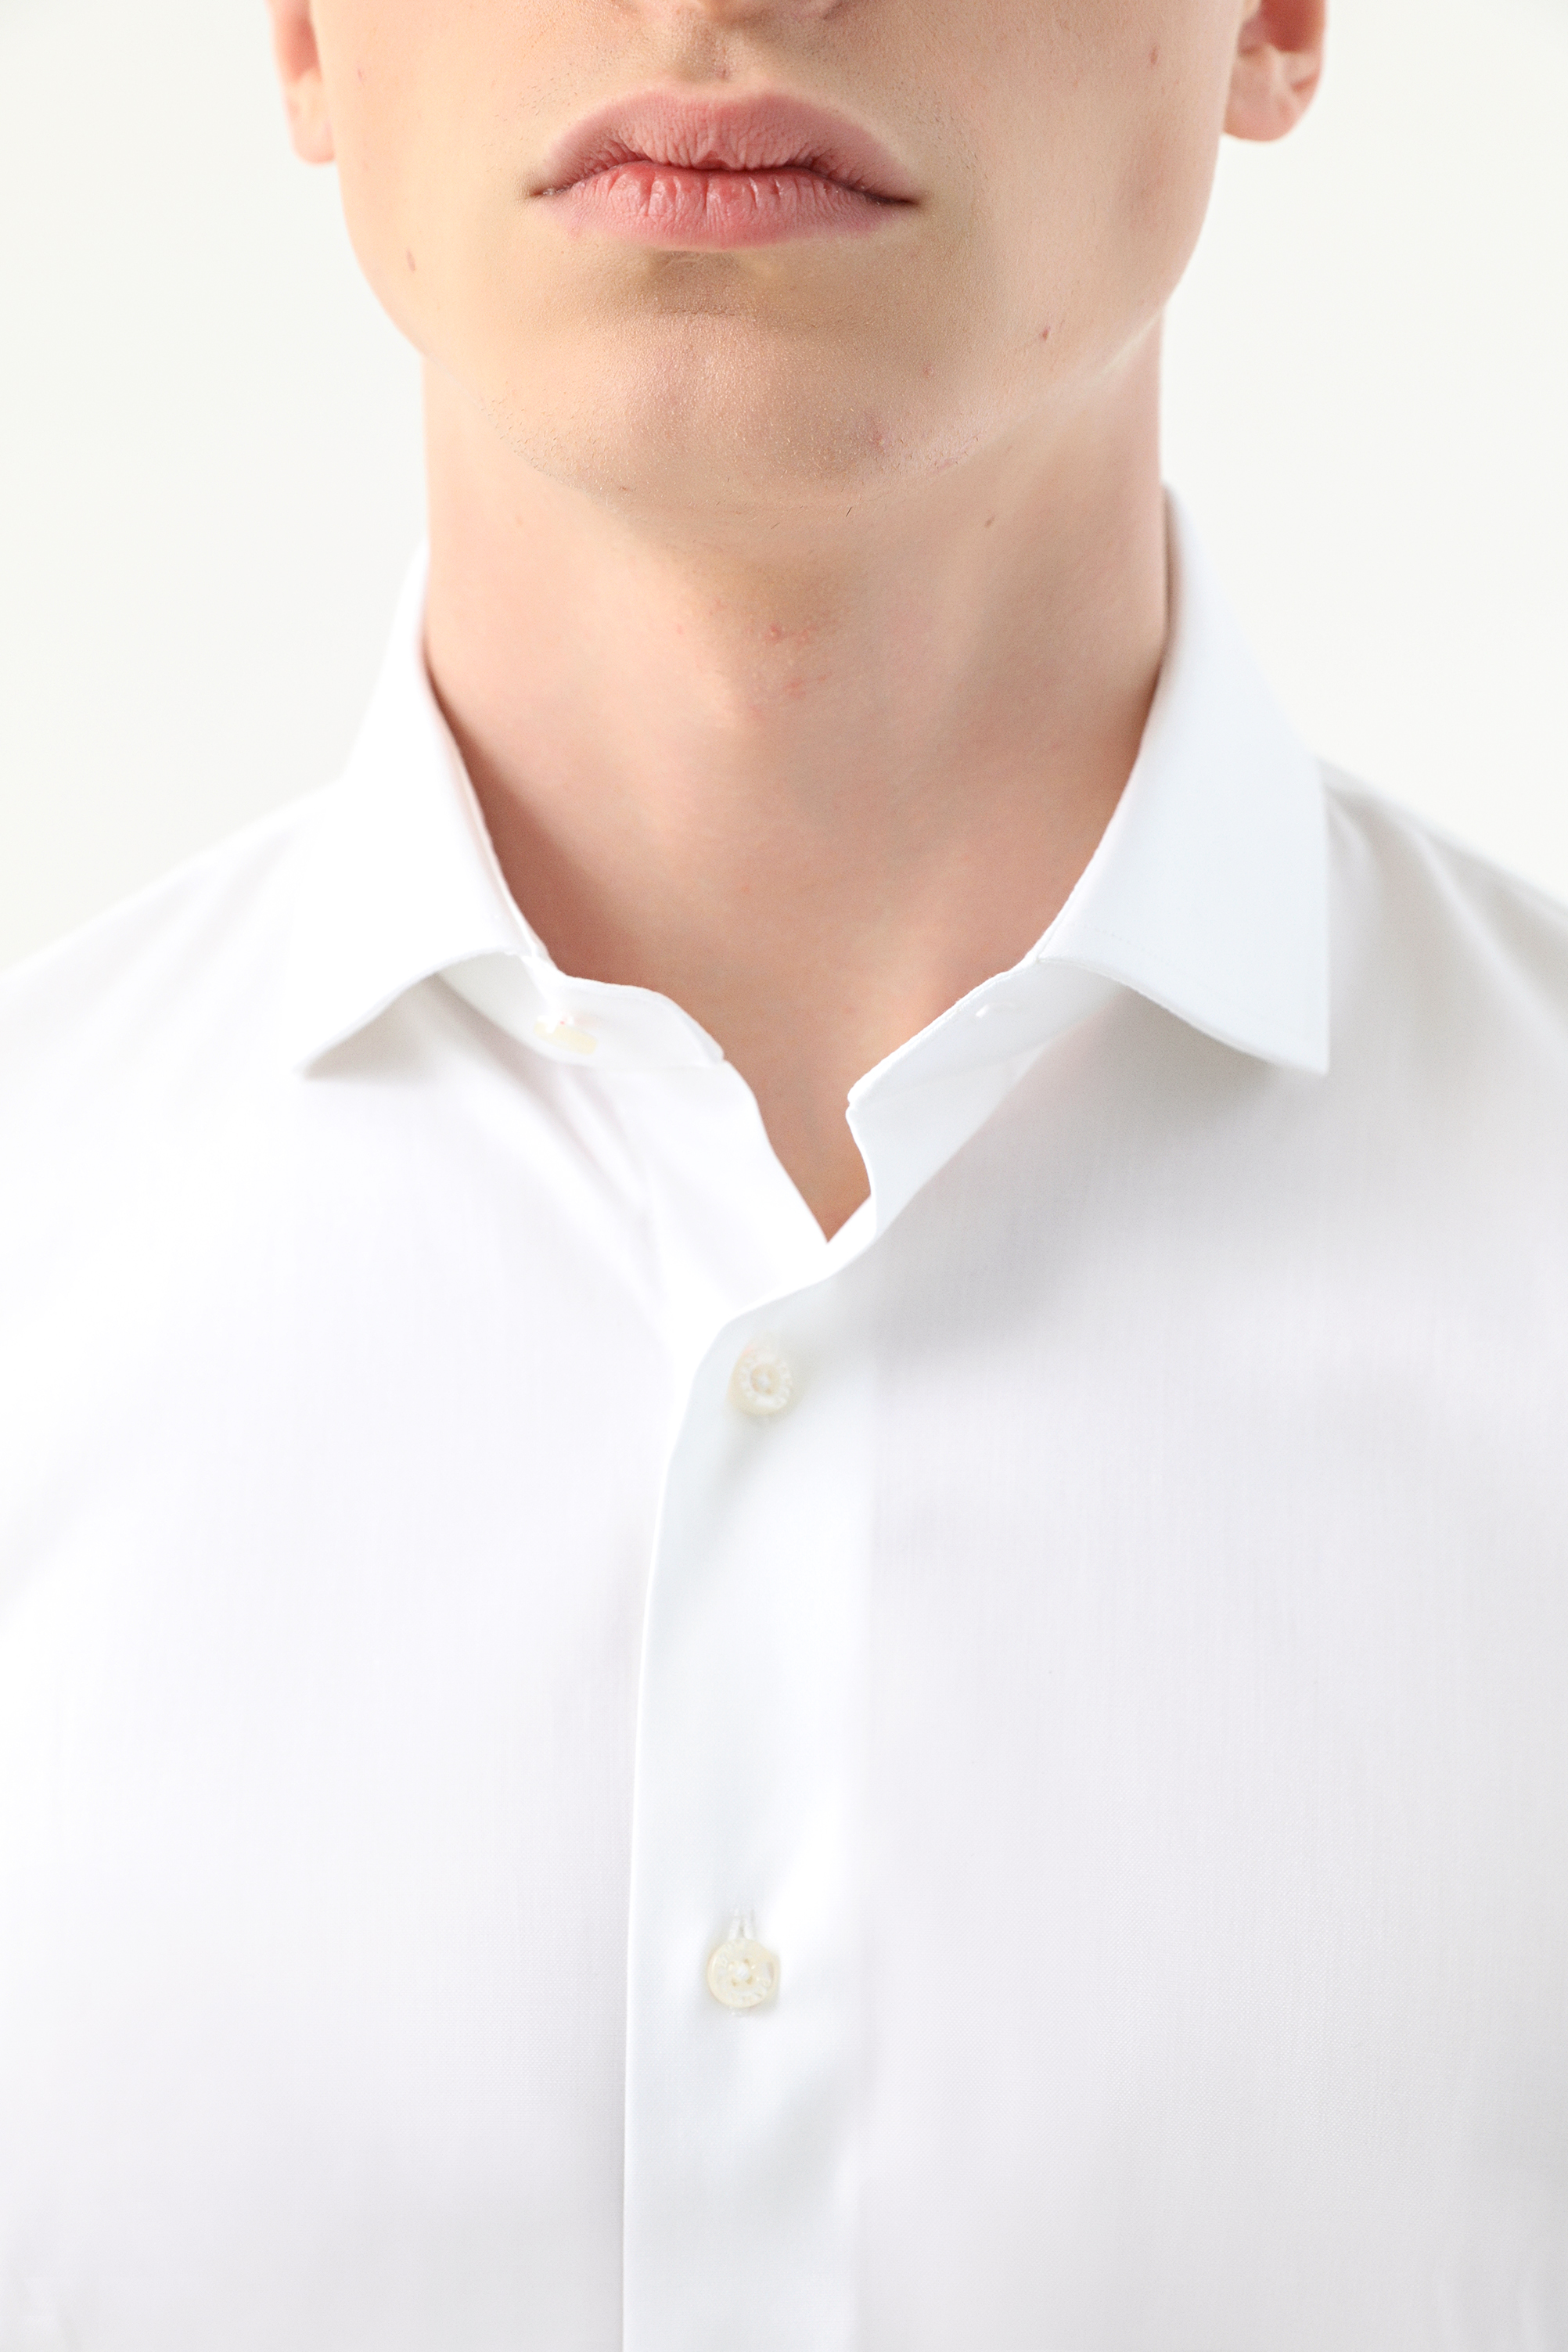 Damat Tween Damat Slim Fit Beyaz Desenli Nano Care Gömlek. 3